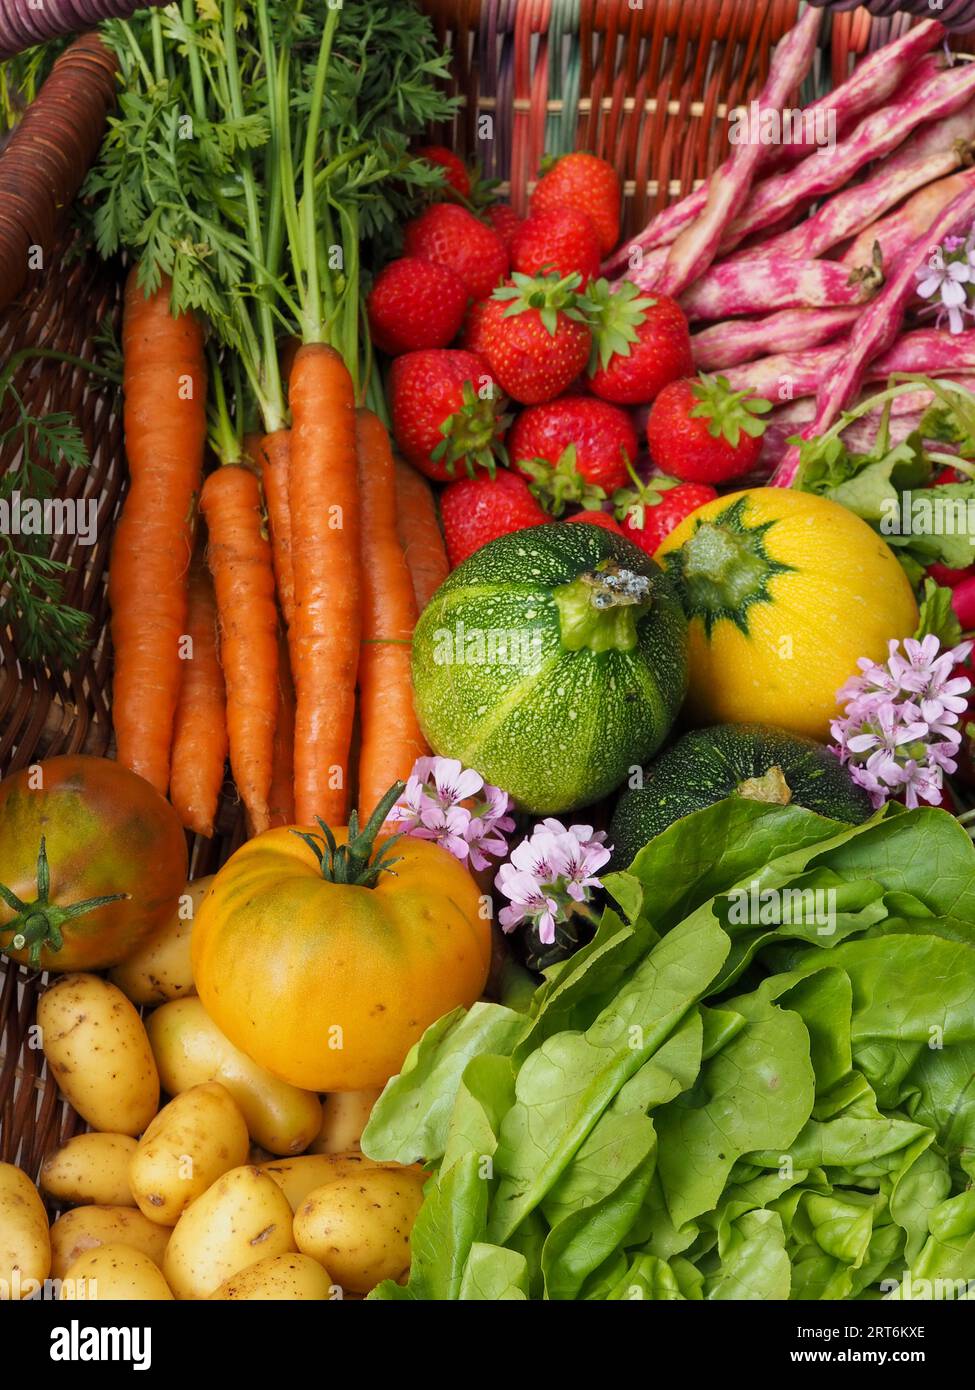 Gros plan de fruits et légumes frais et colorés d'un potager, y compris des carottes, des courgettes, des fraises et des légumes à salade Banque D'Images